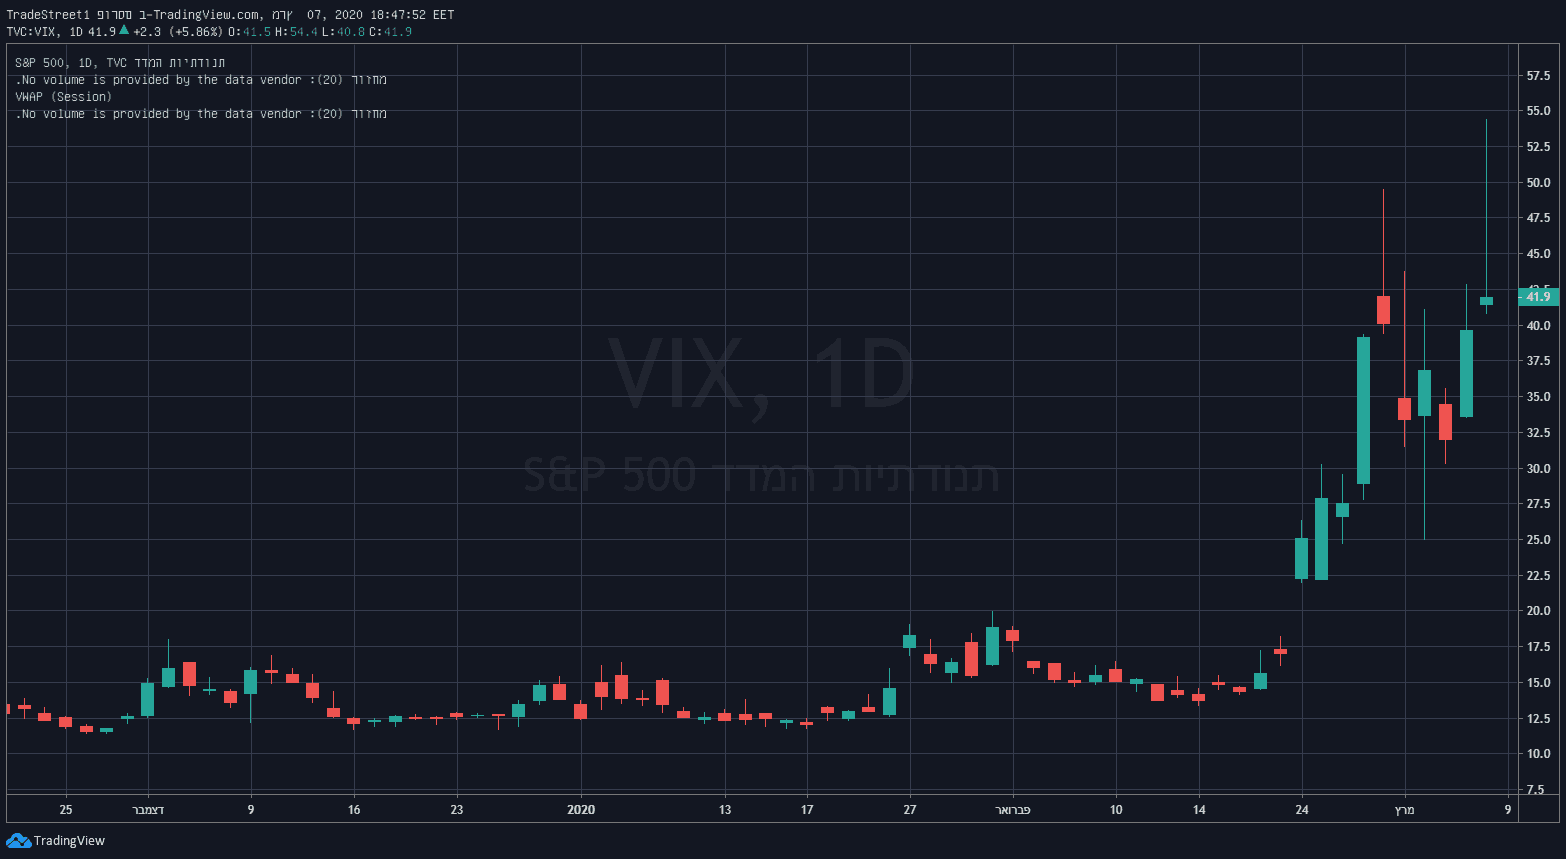 VIX 07.03.2020